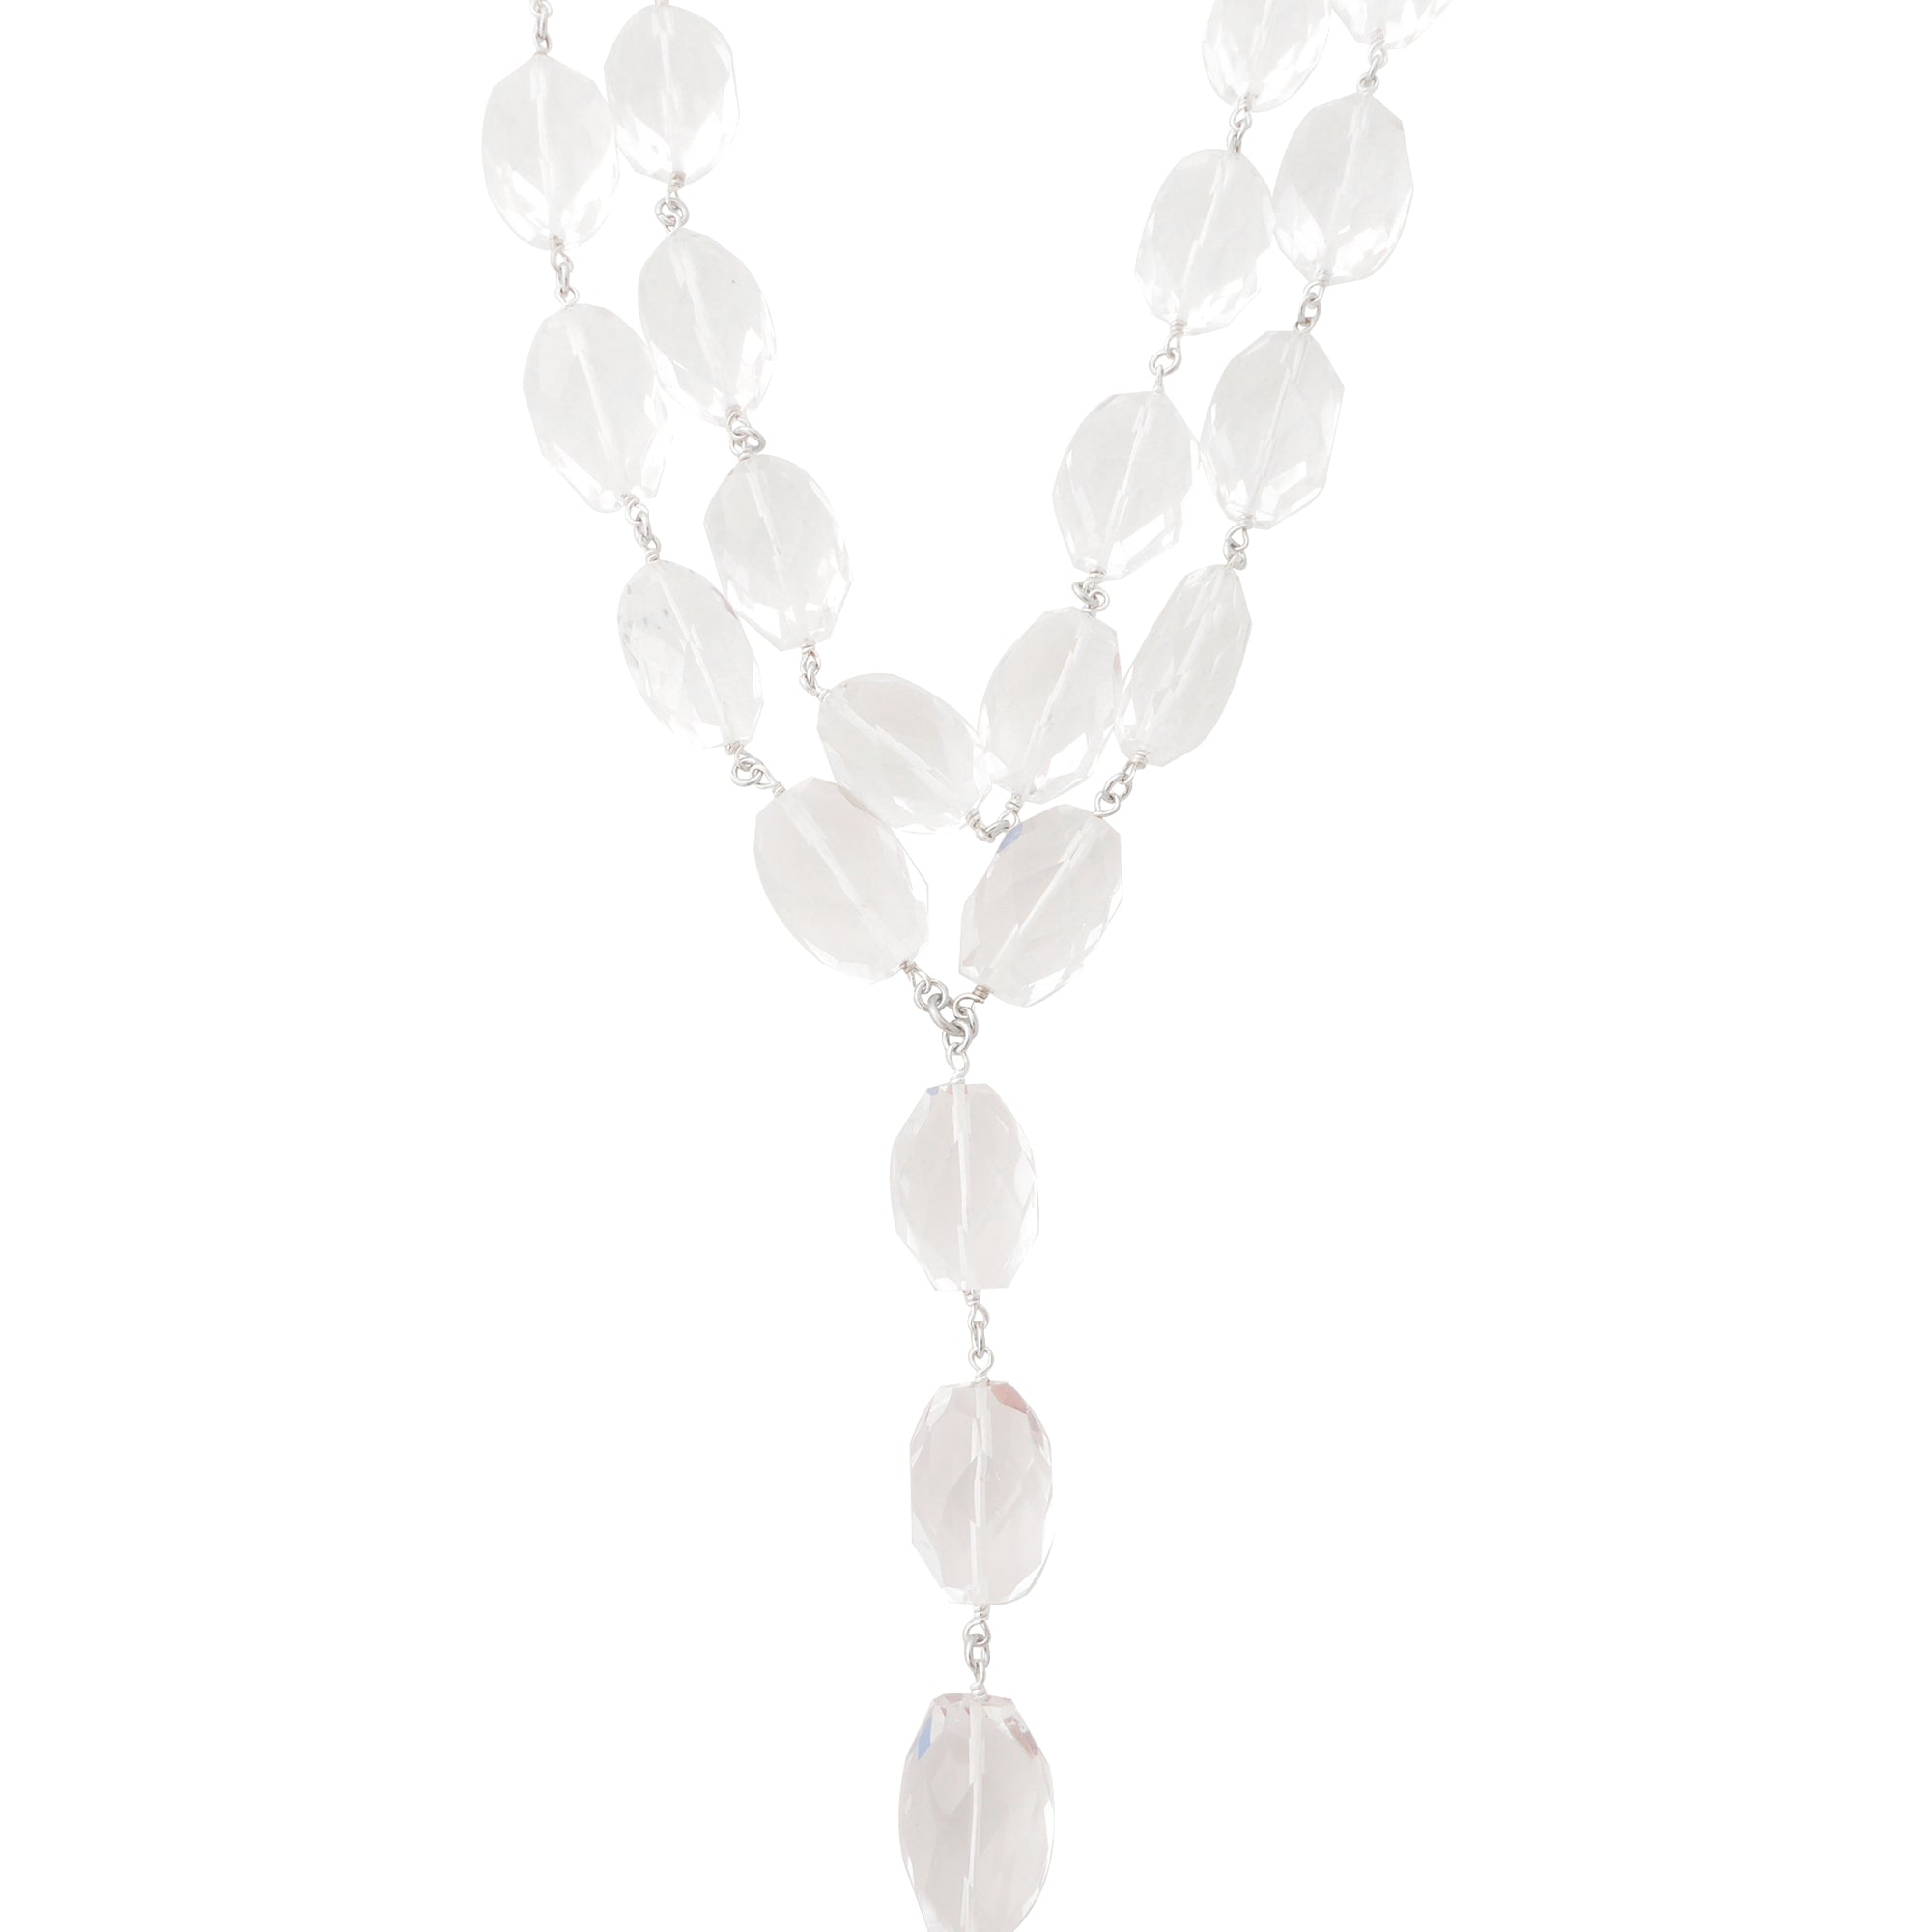 Rock crystal necklace by Jenny Dayco 1